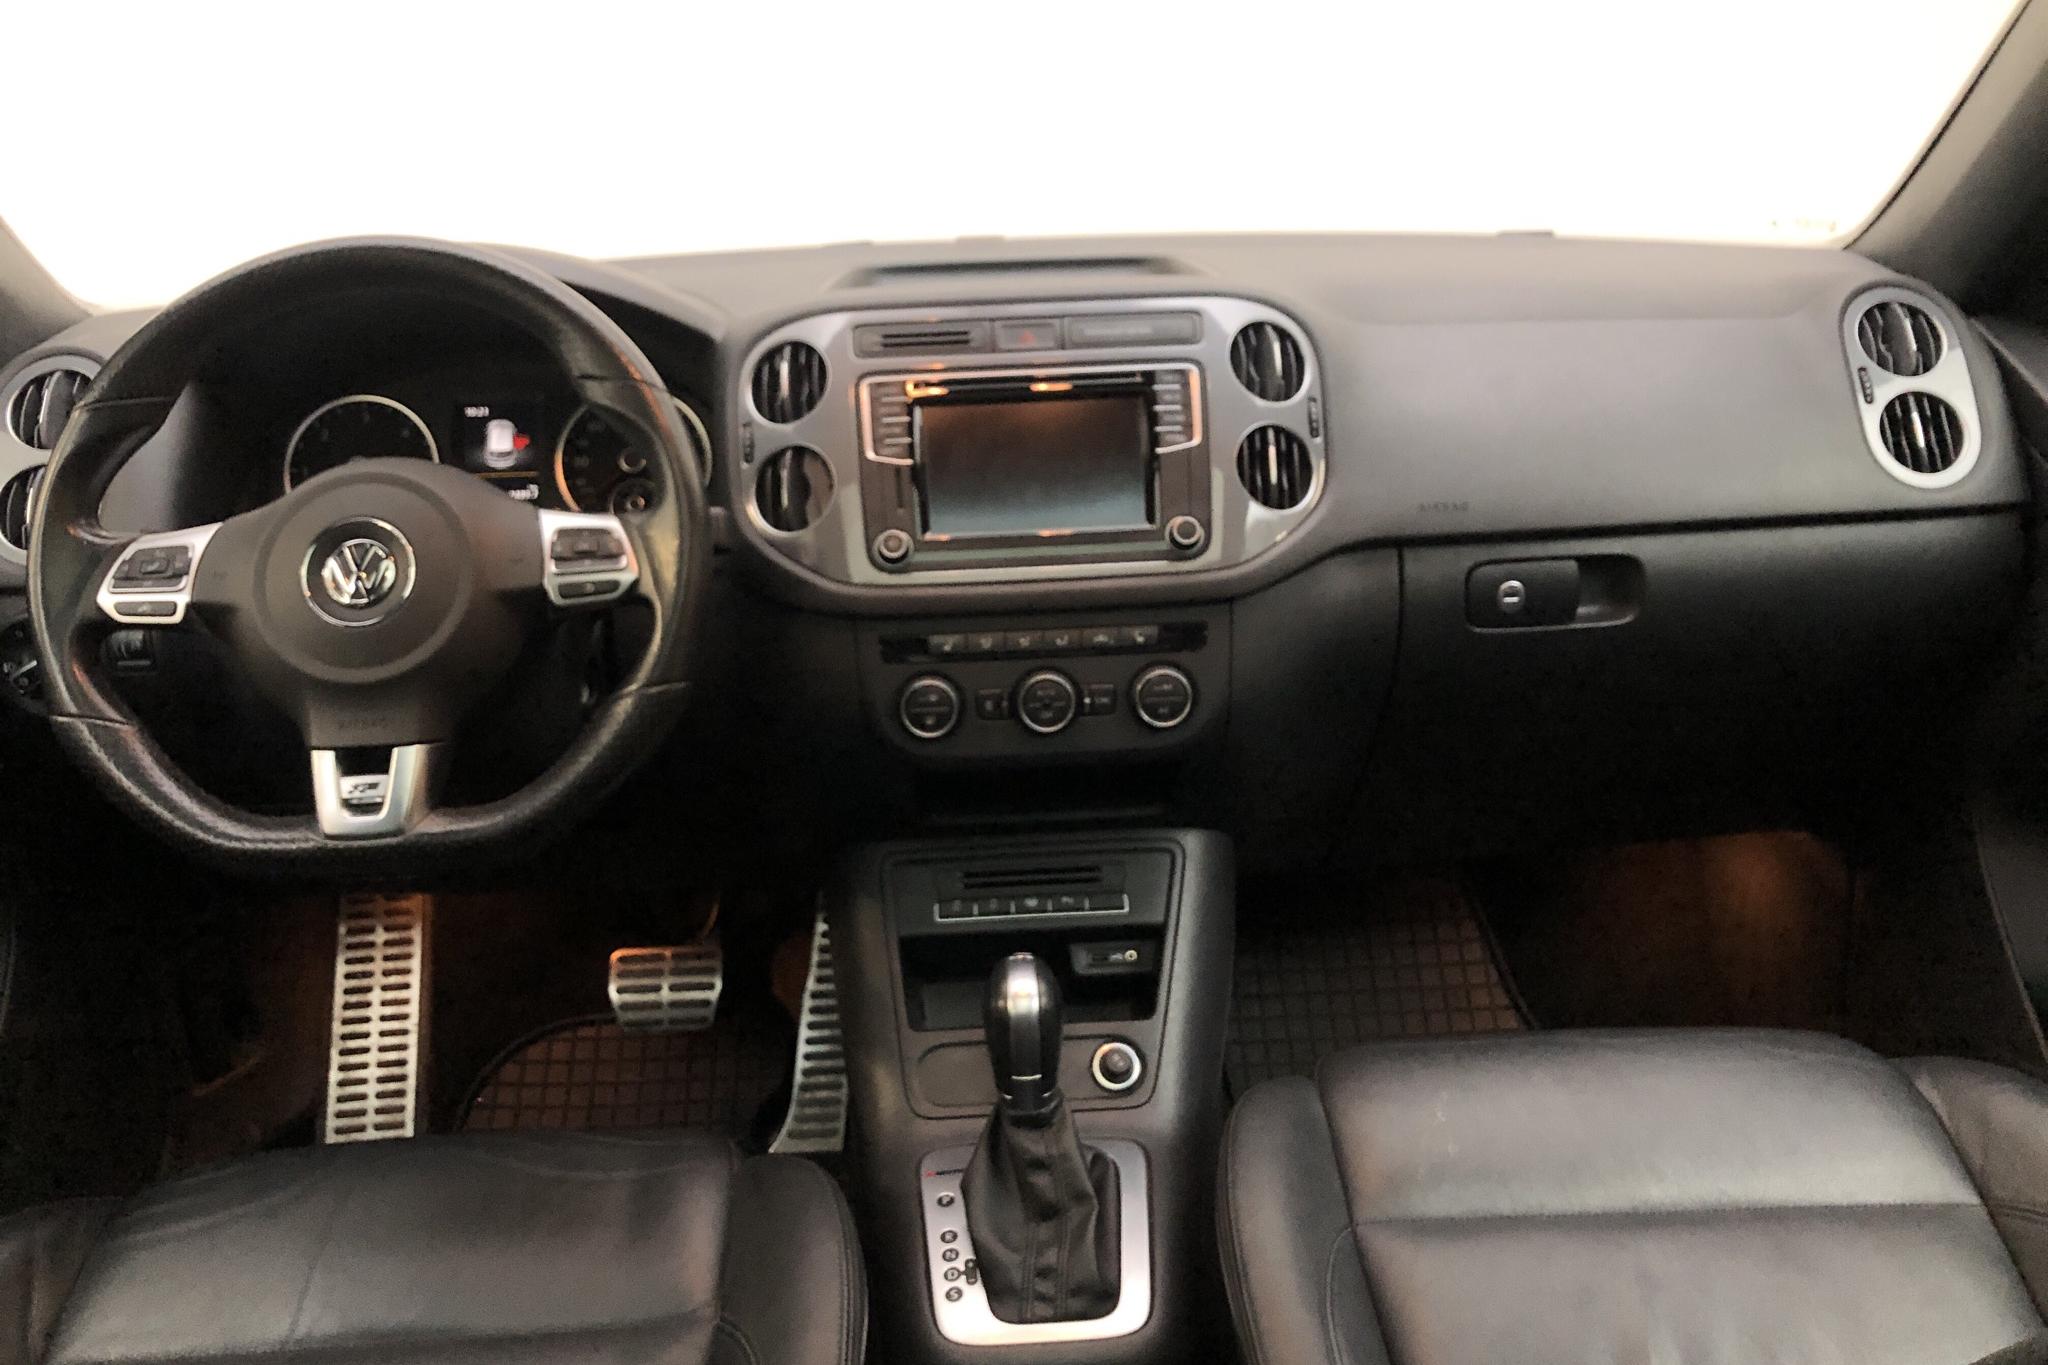 VW Tiguan 2.0 TDI 4MOTION BlueMotion Technology (184hk) - 132 980 km - Automatyczna - Light Brown - 2016